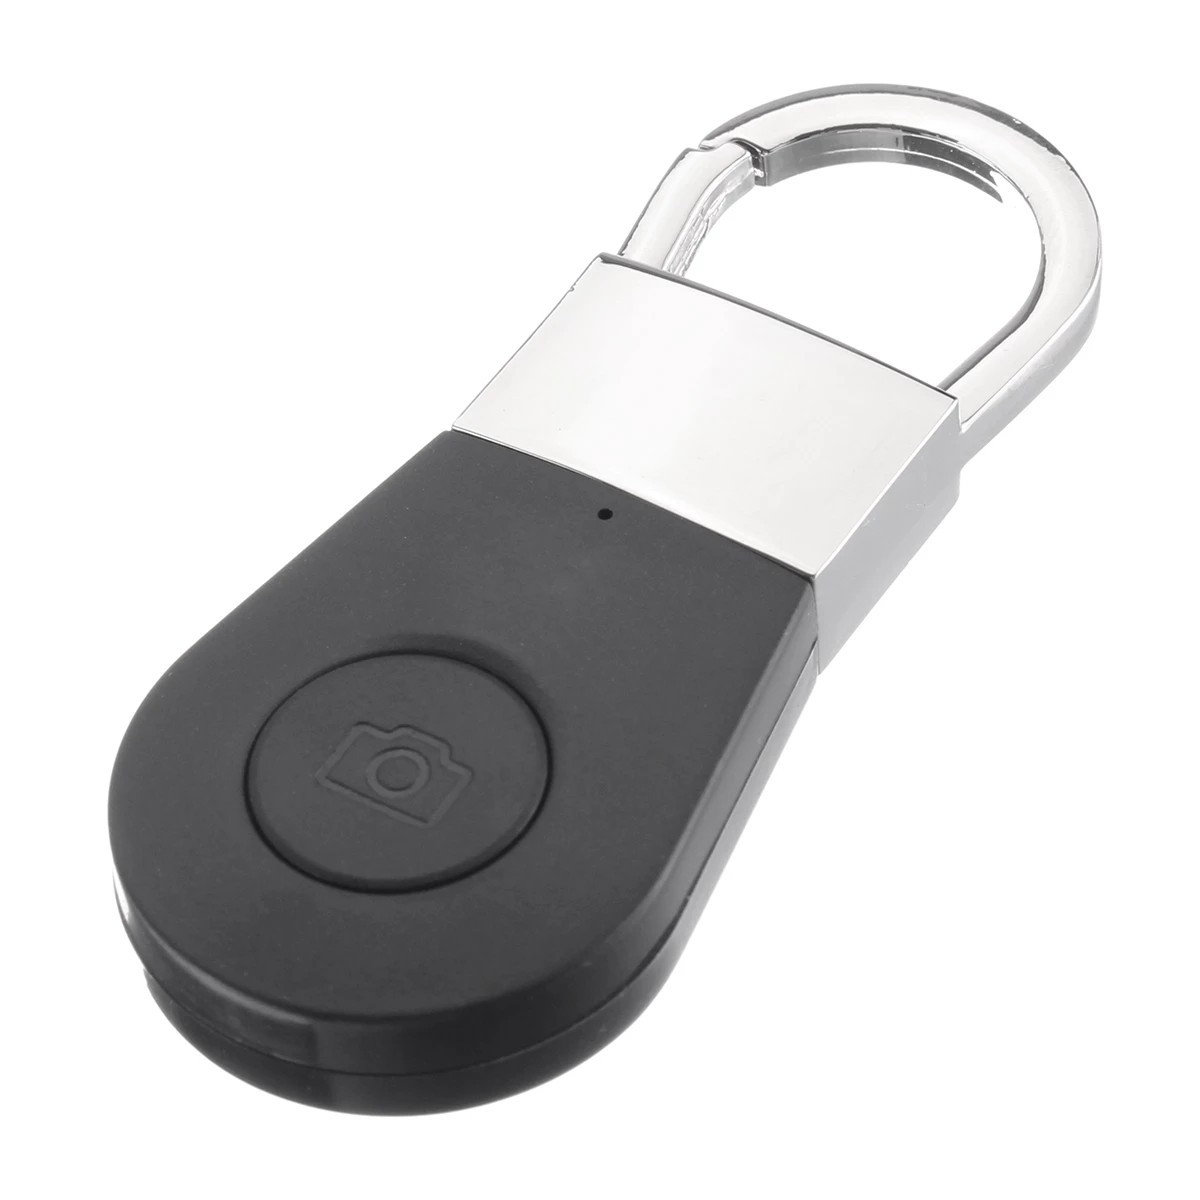 Key finder - cercatore bluetooth per chiavi, telefono cellulare, ecc